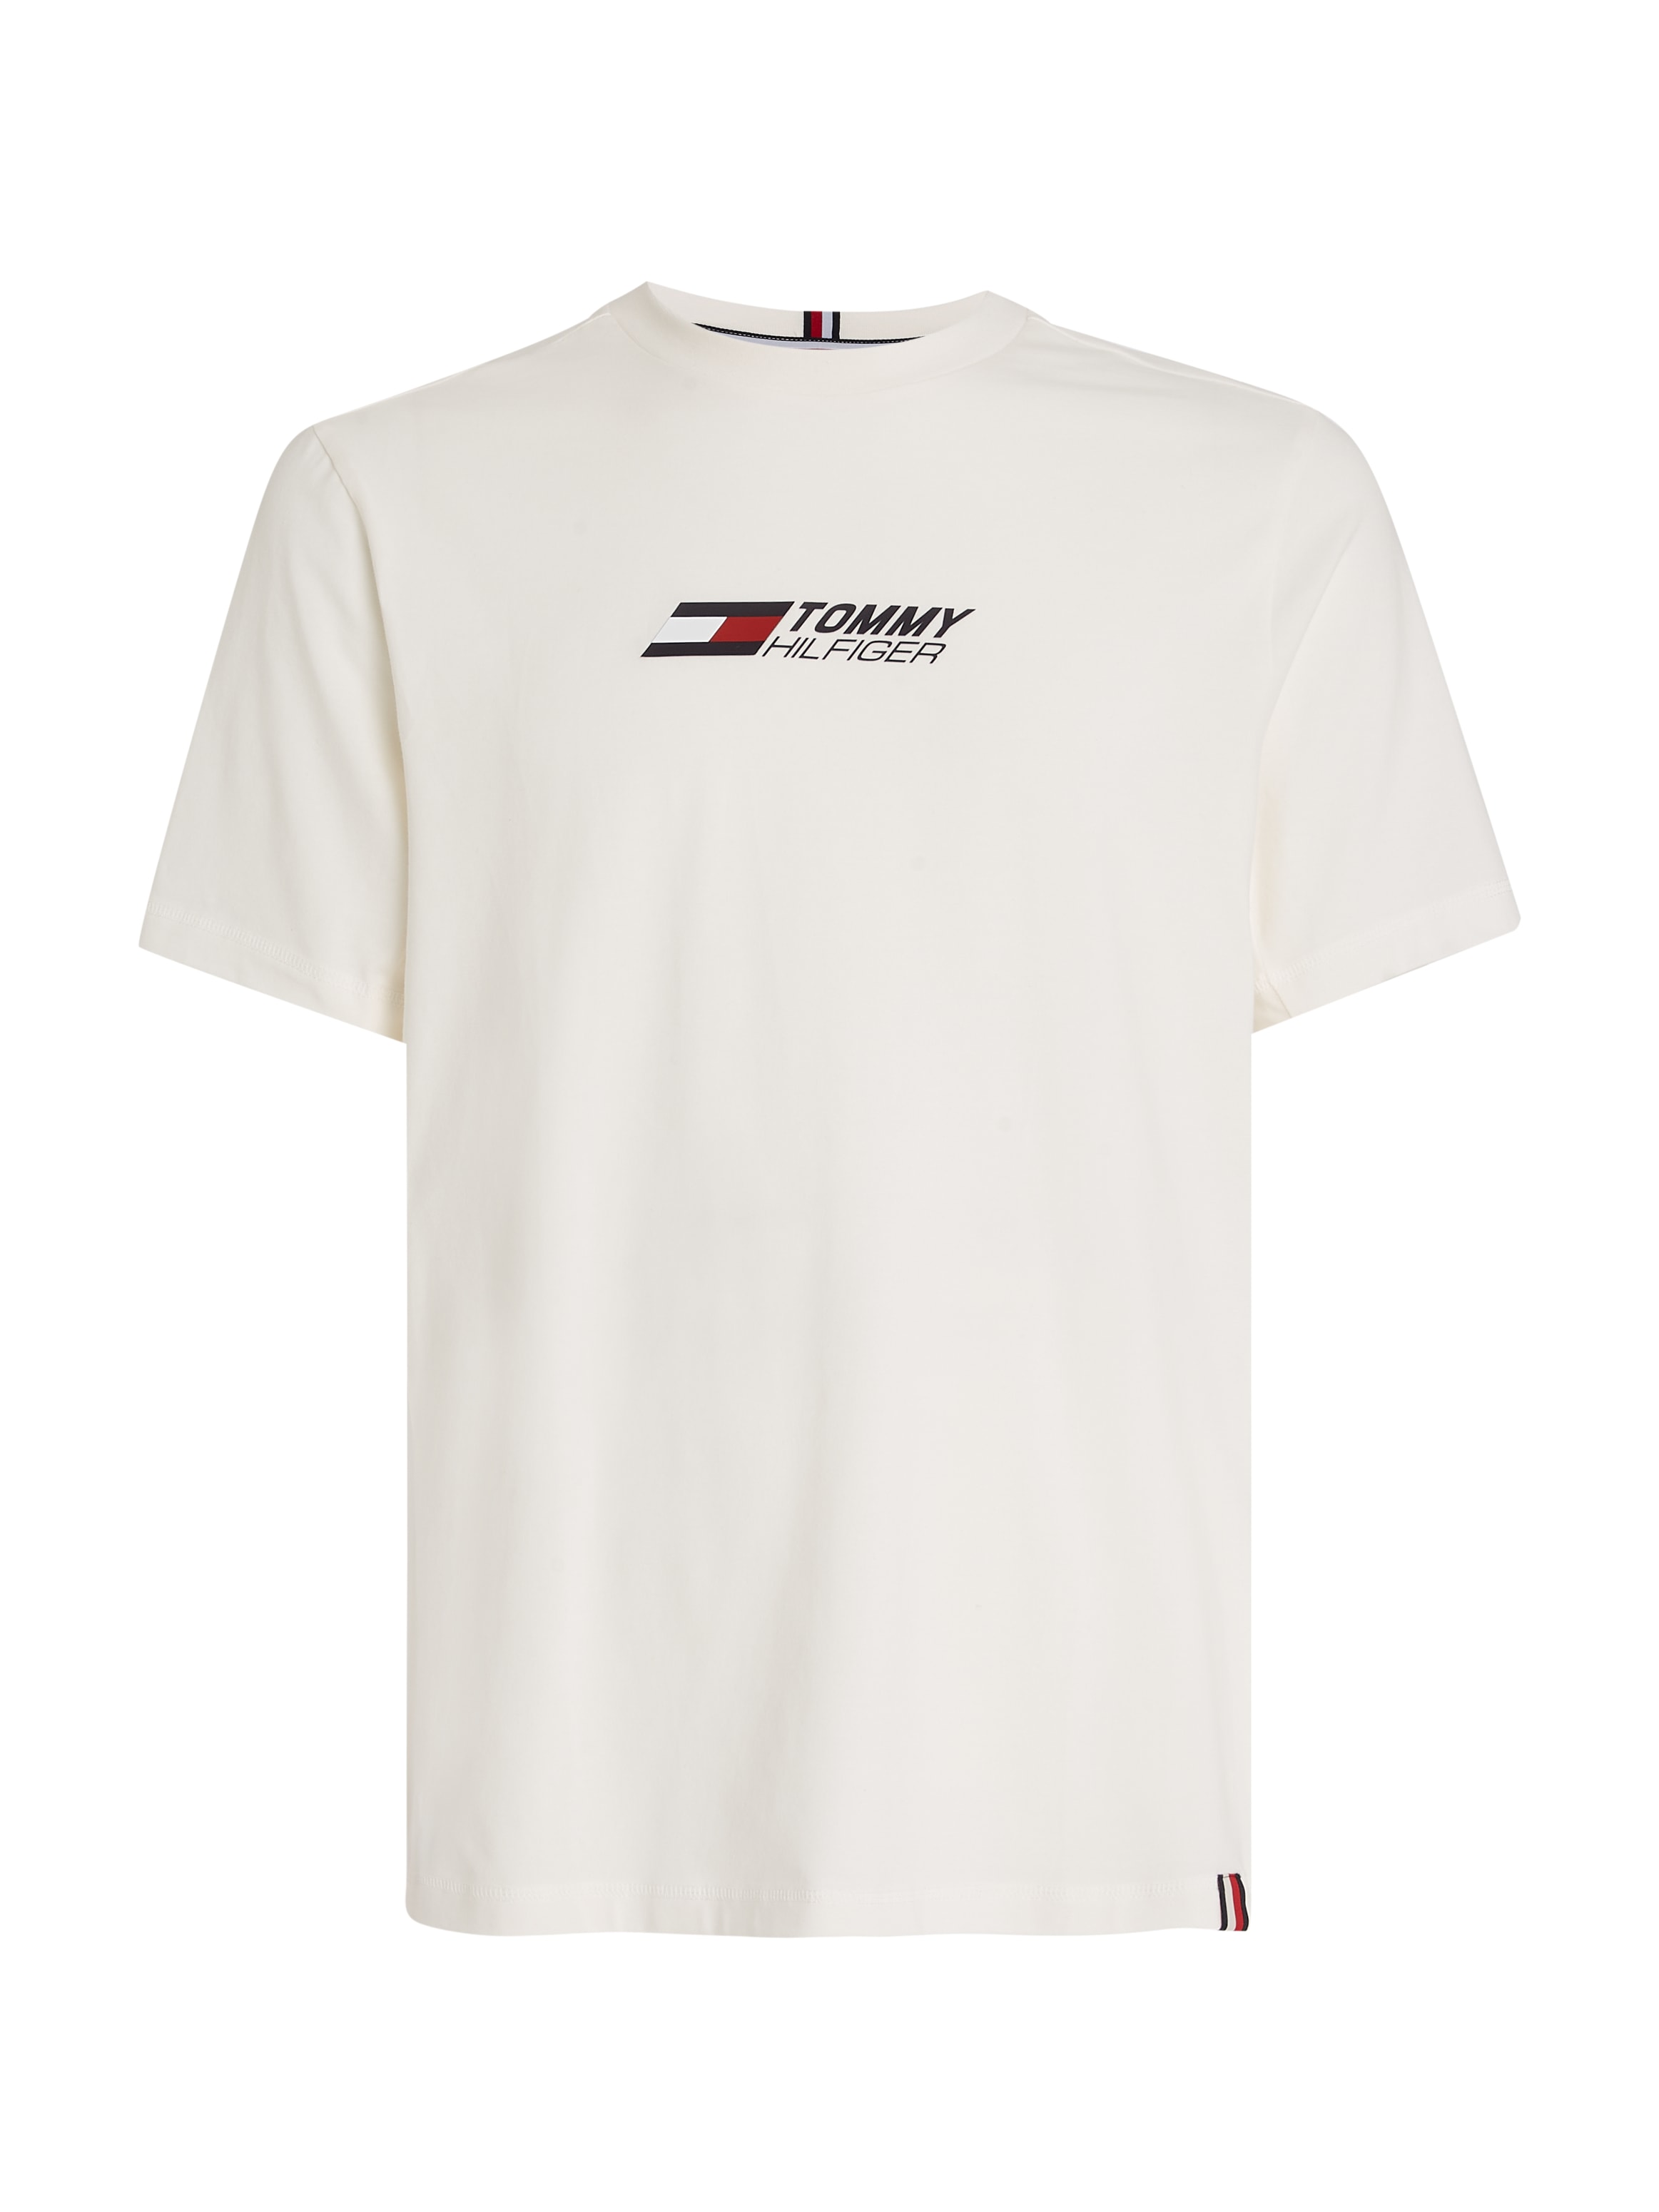 Tommy Hilfiger BIG shoppen Sport Brust Hilfiger T-Shirt Tommy online bei TEE«, der auf LOGO »ESSENTIAL Logodruck mit OTTO